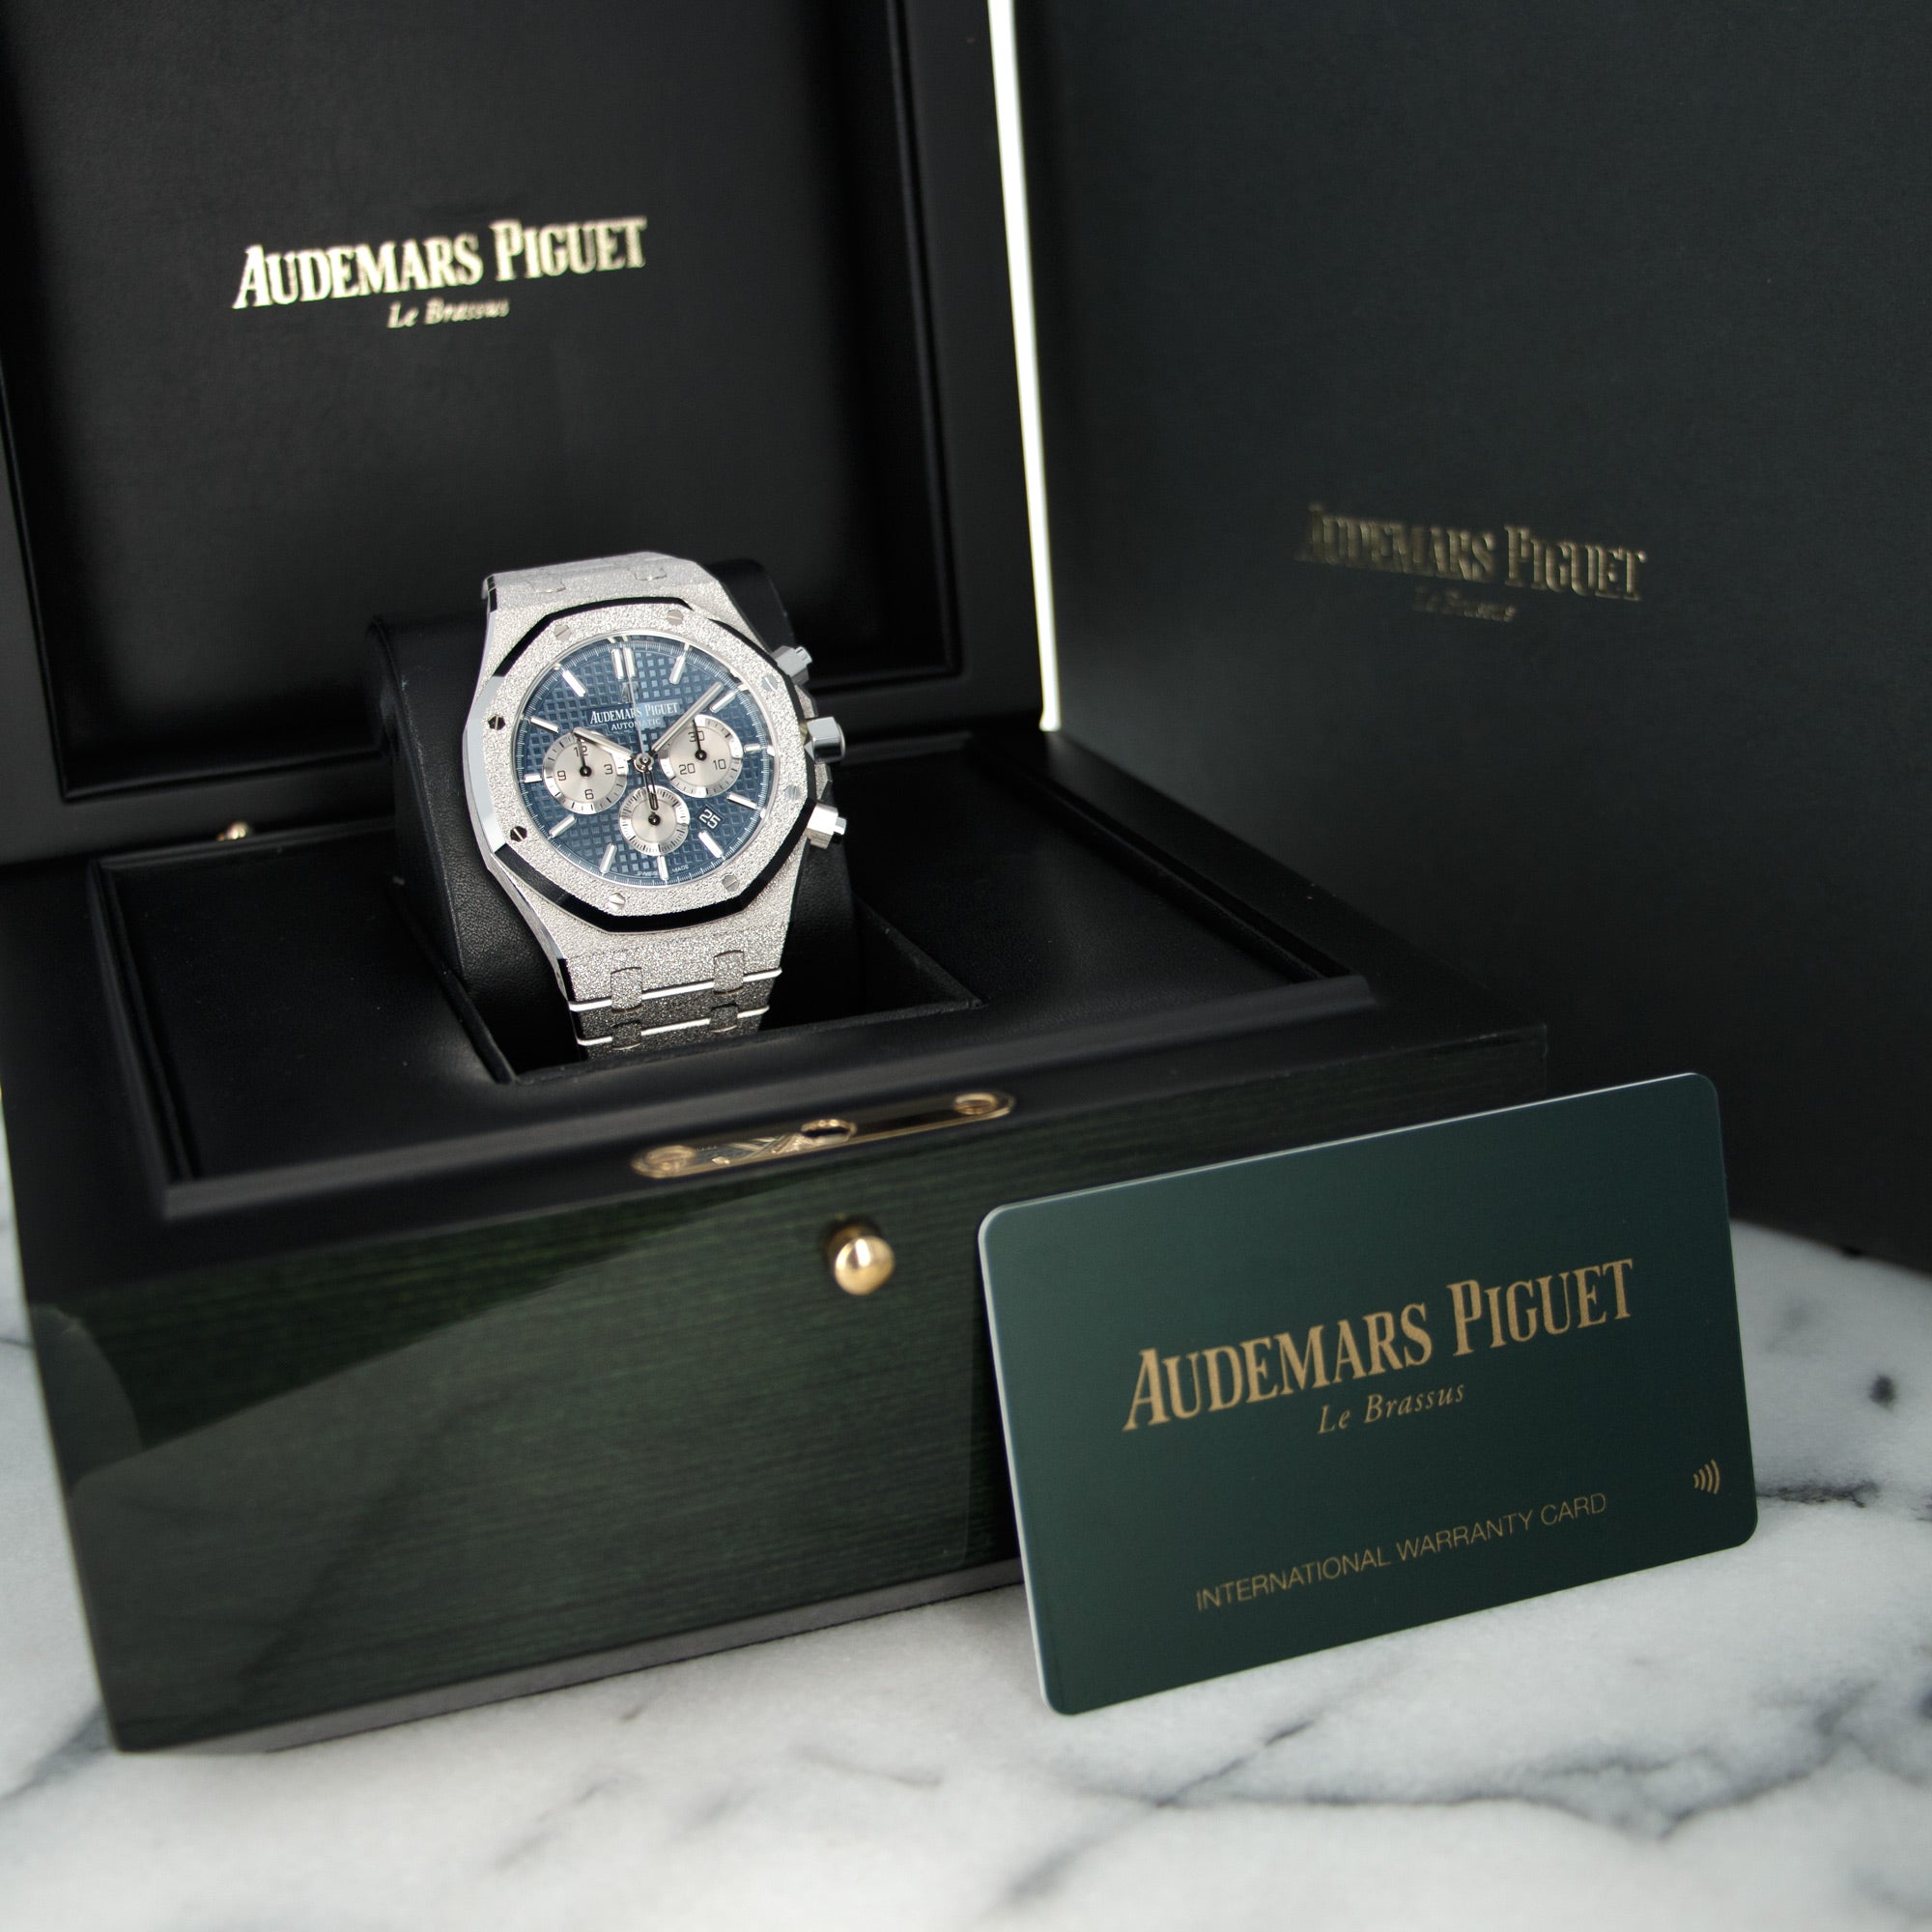 Audemars Piguet - Audemars Piguet Frosted White Gold Royal Oak Watch Ref. 26331 - The Keystone Watches